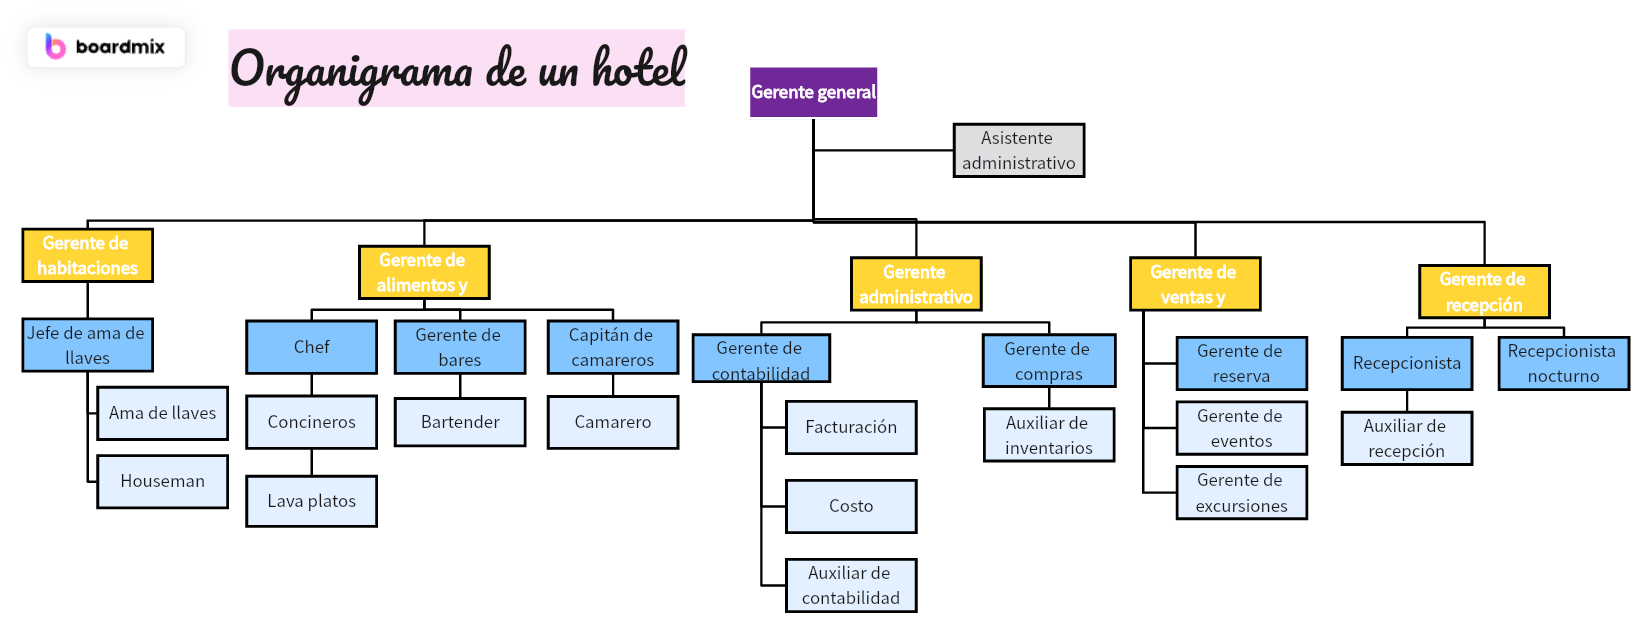 Descubra el organigrama de un hotel: Una mirada al interior de la Industria hotelera